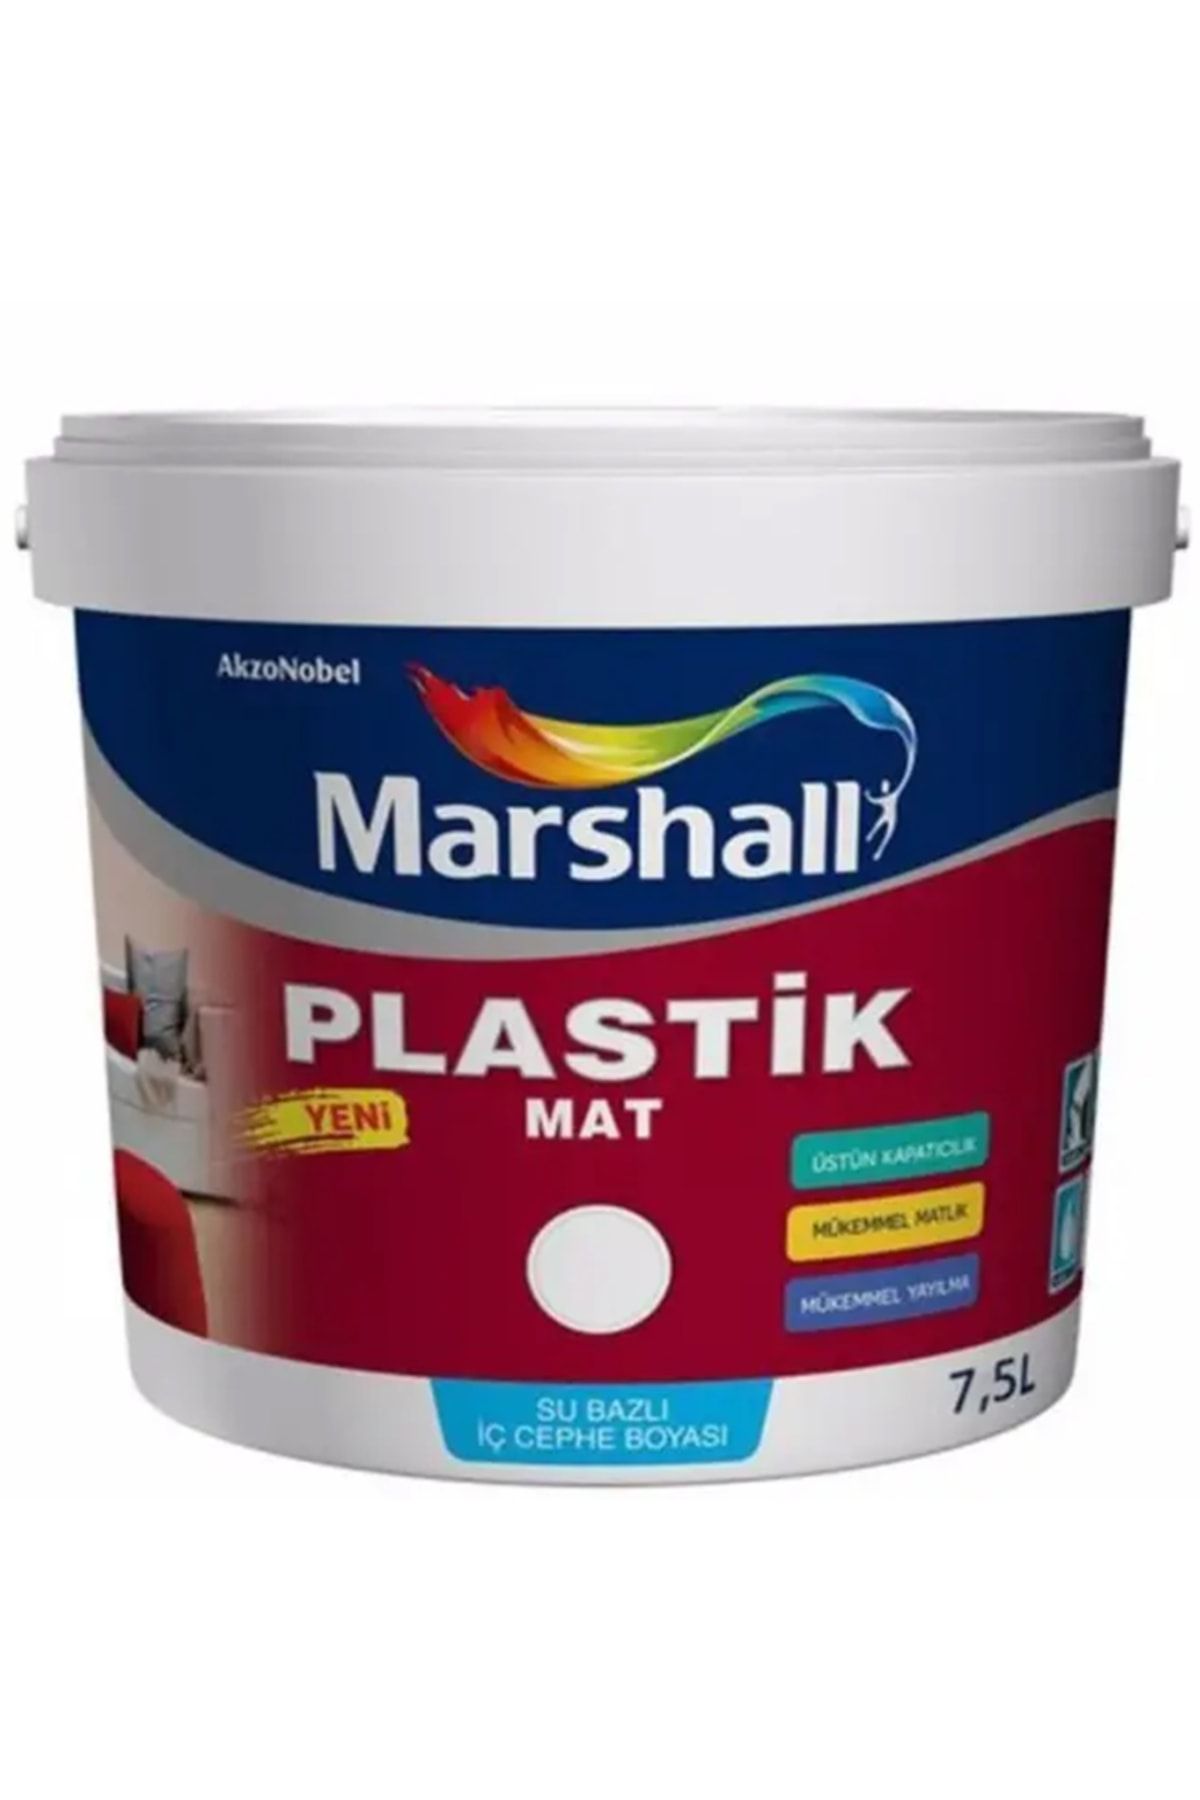 Marshall Plastik Mat Silinebilir Iç Cephe Boyası Mor Salkım 7,5 Lt (10 Kg)